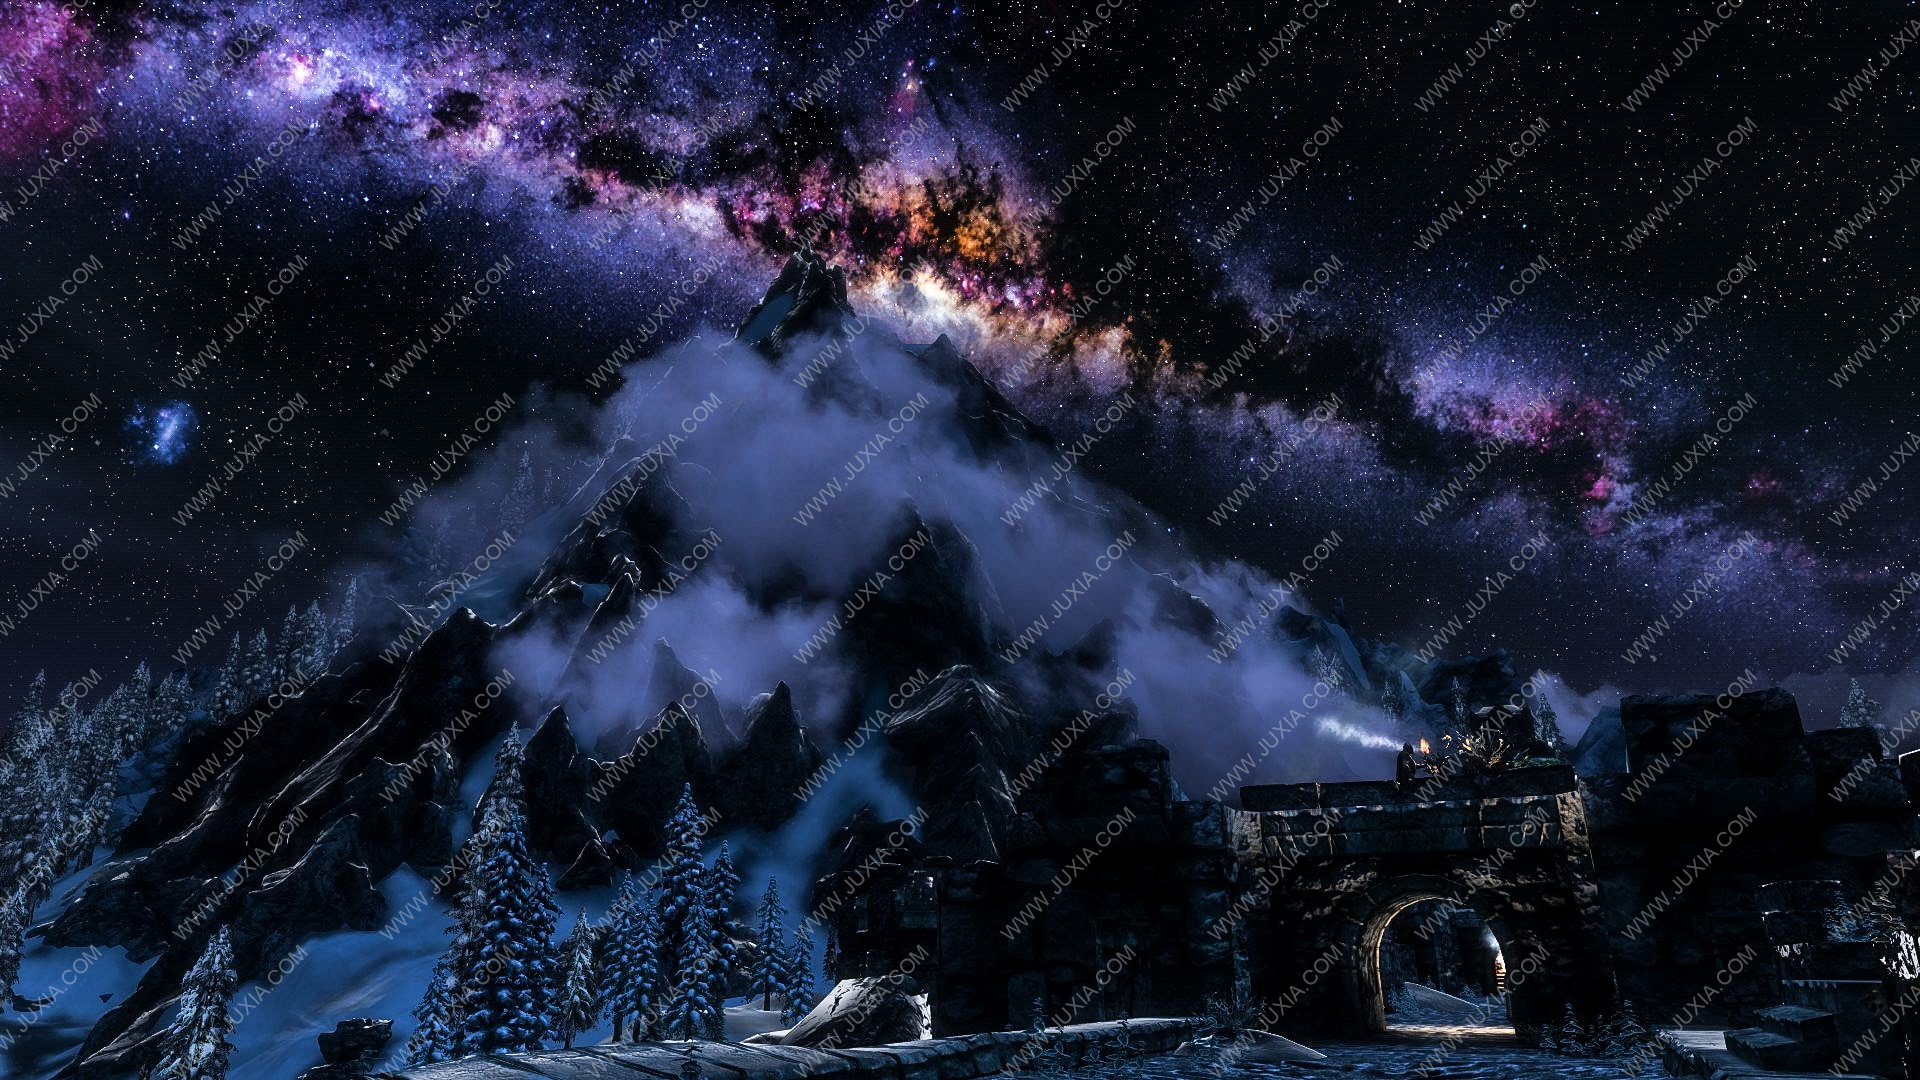 从星空中看虚拟游戏与现实世界的边界 荒野大镖客2巫师3等游戏的灿烂星空